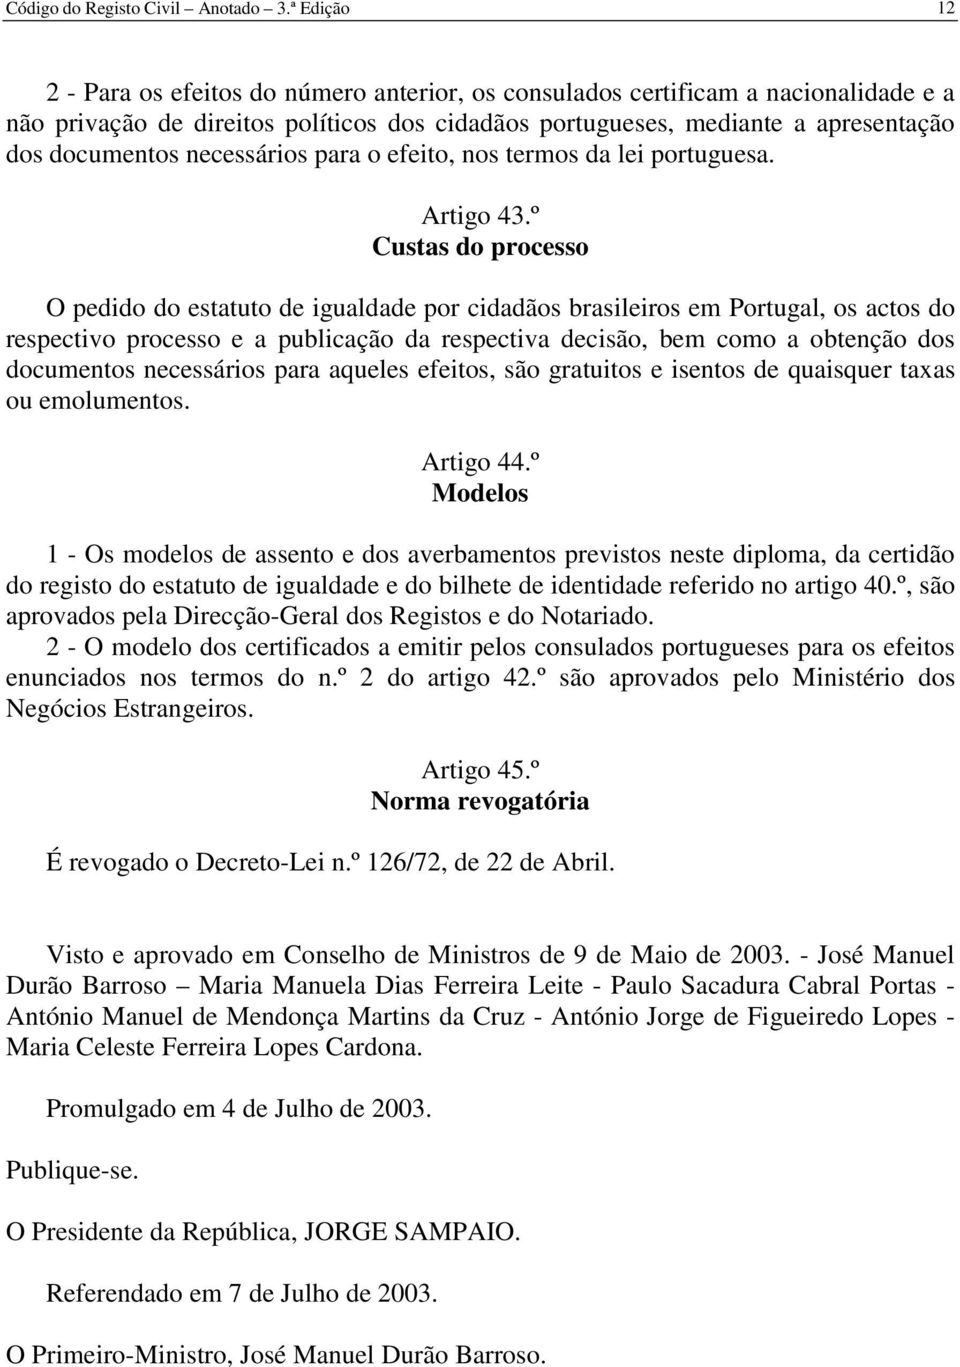 necessários para o efeito, nos termos da lei portuguesa. Artigo 43.